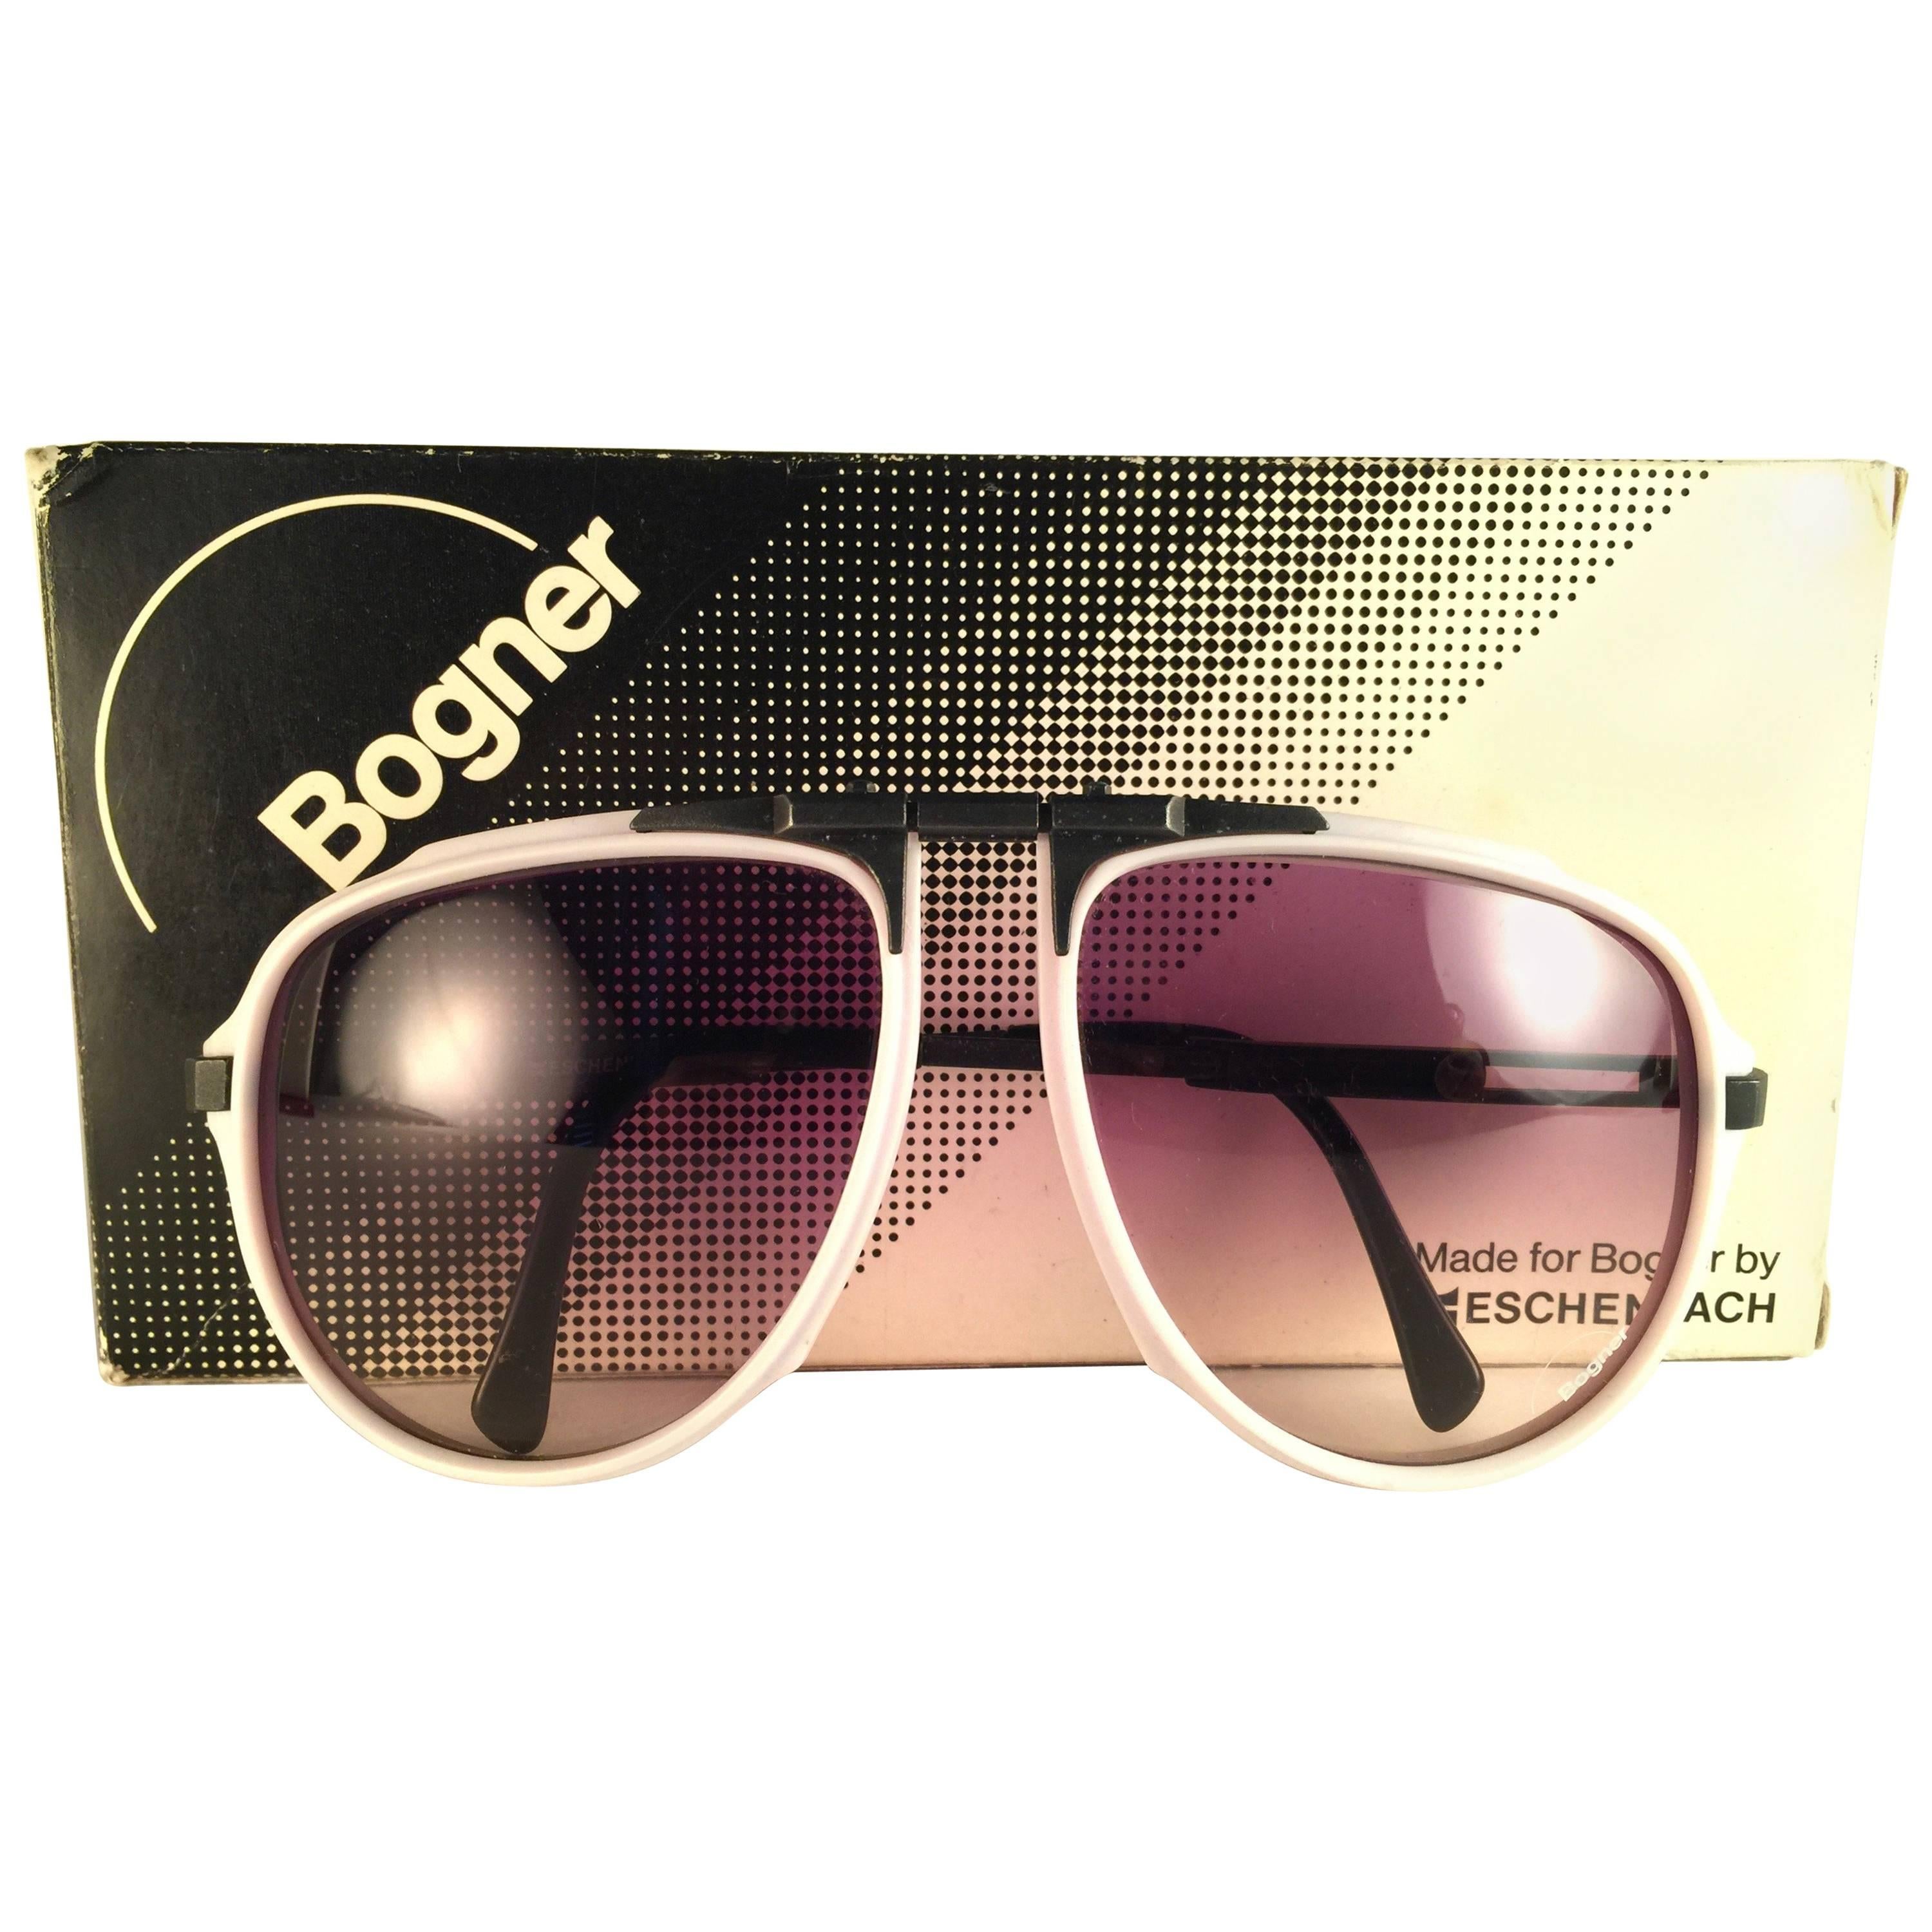 New Vintage Bogner 7003 90 Black & White James Bond Roger Moore 007 Sunglasses